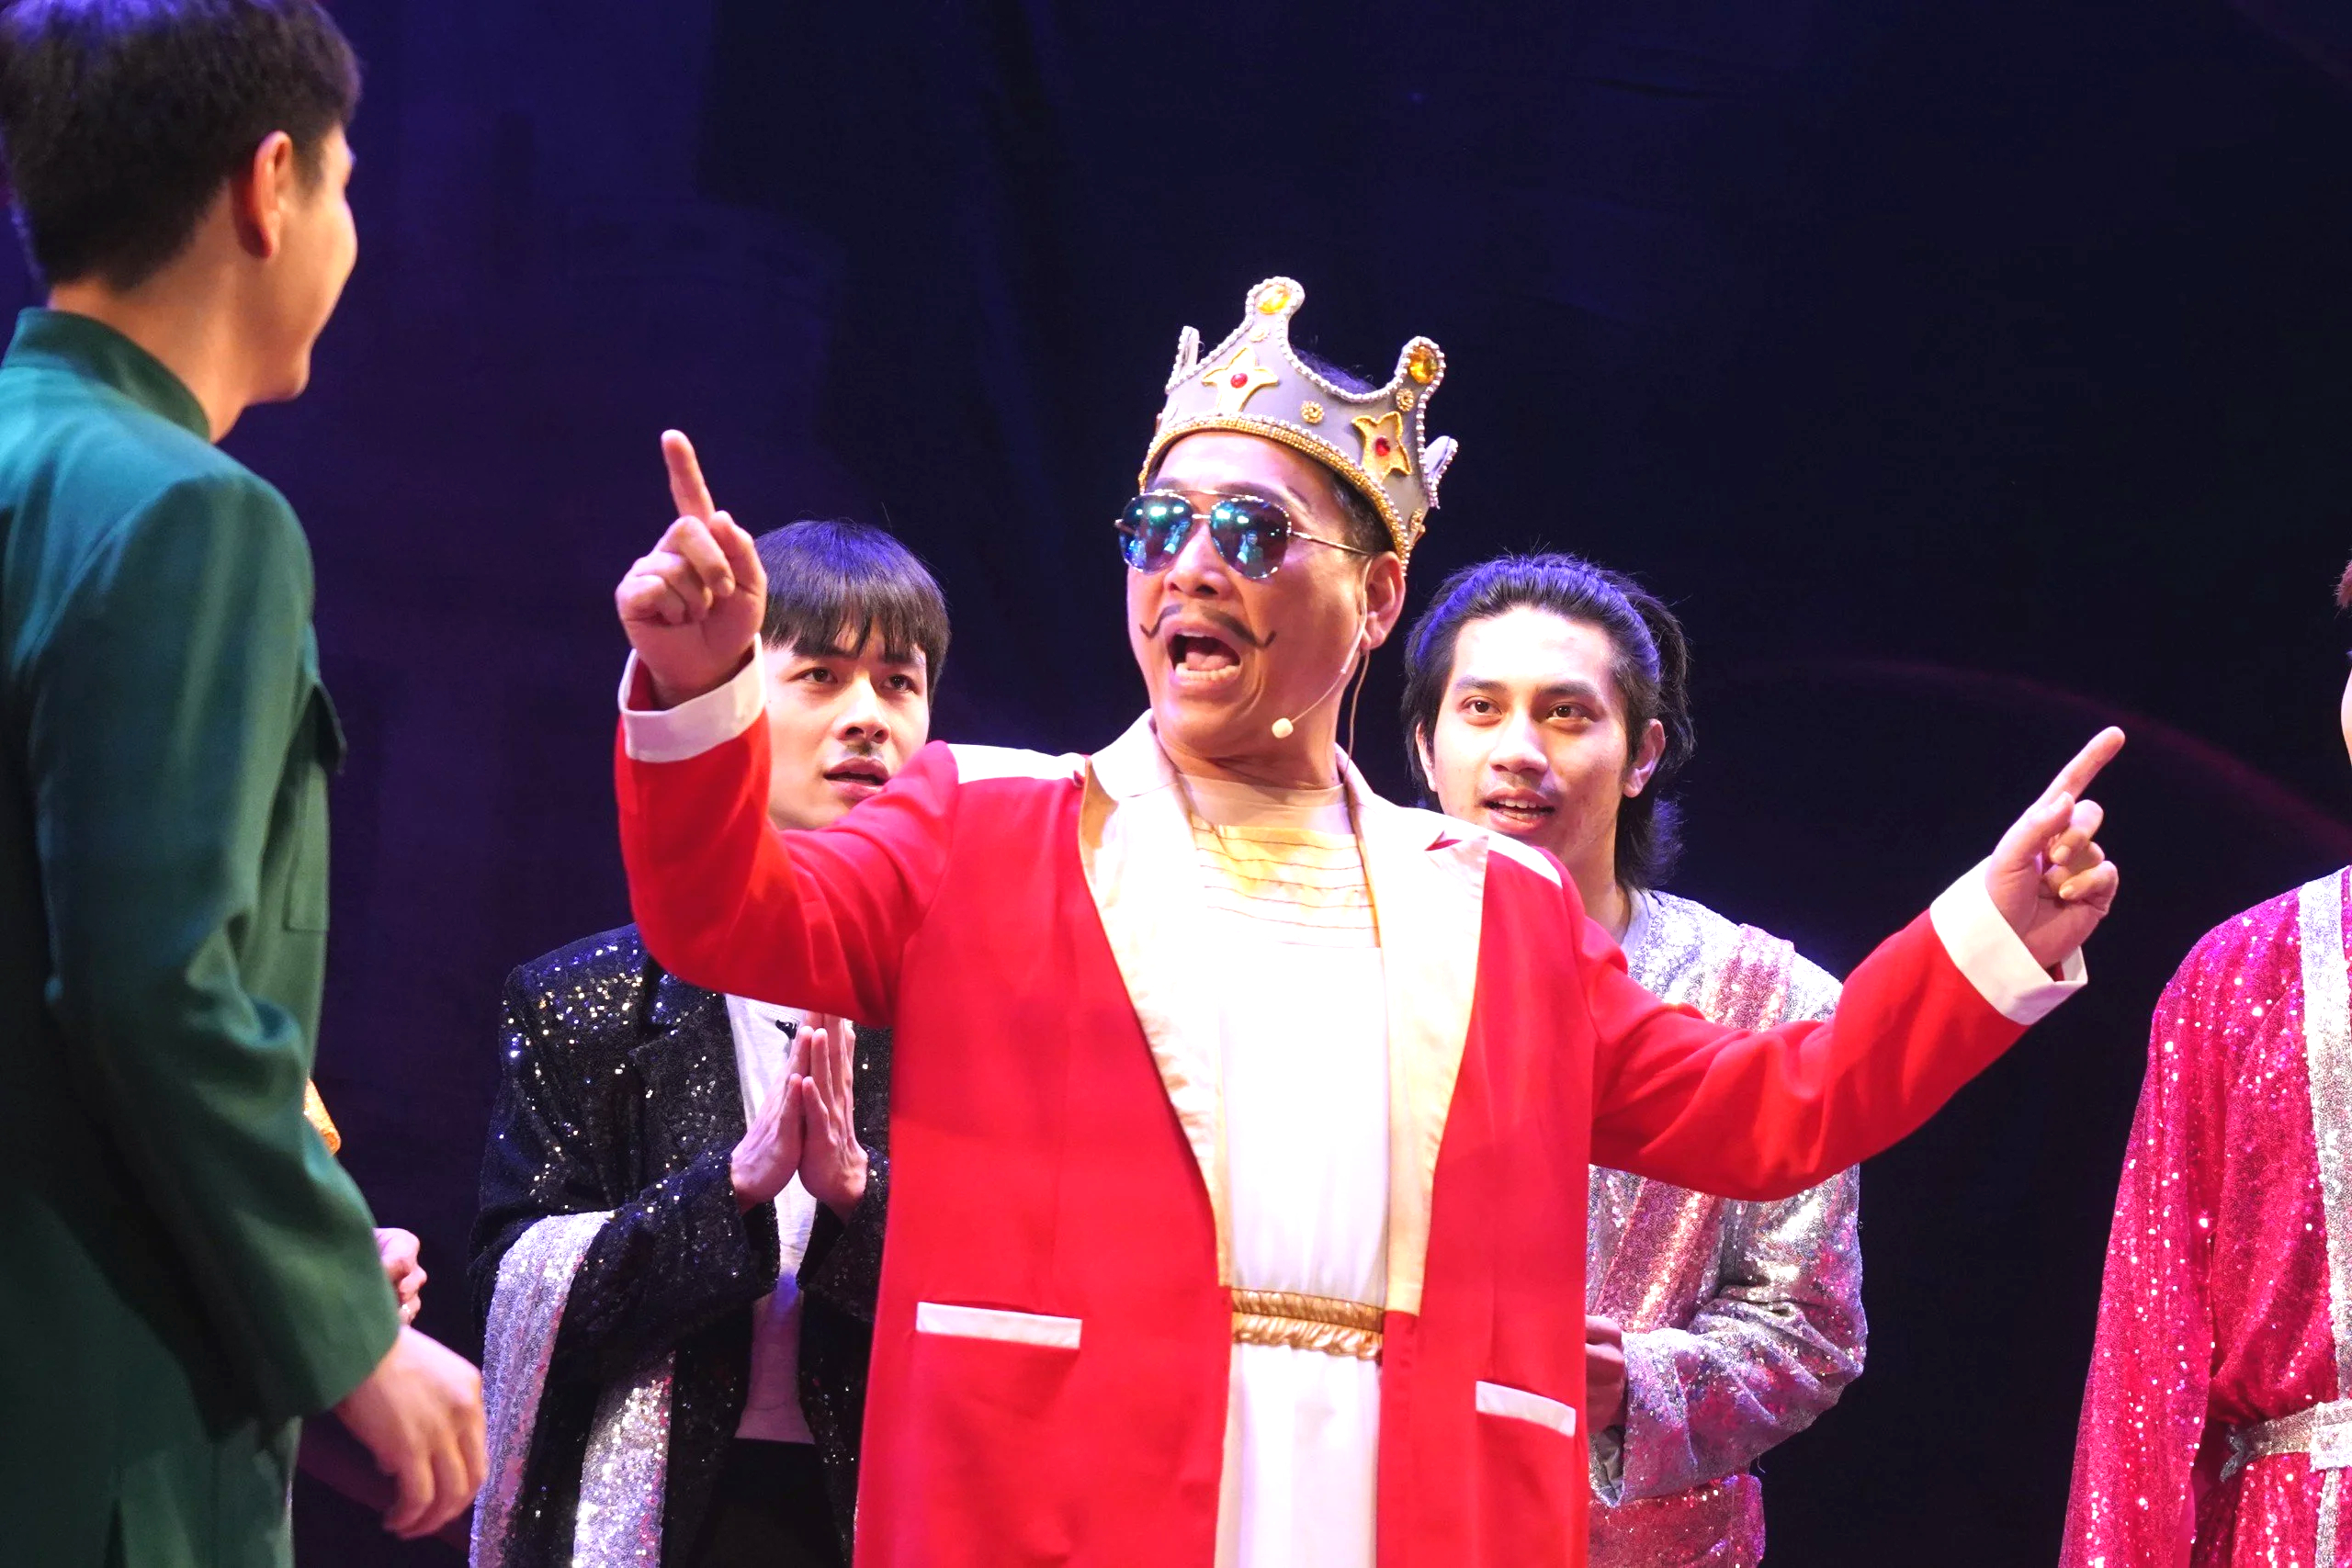 "Hoàng đế" Kiều Minh Hiếu nude trên sân khấu khiến khán giả nhí cười nắc nẻ- Ảnh 1.